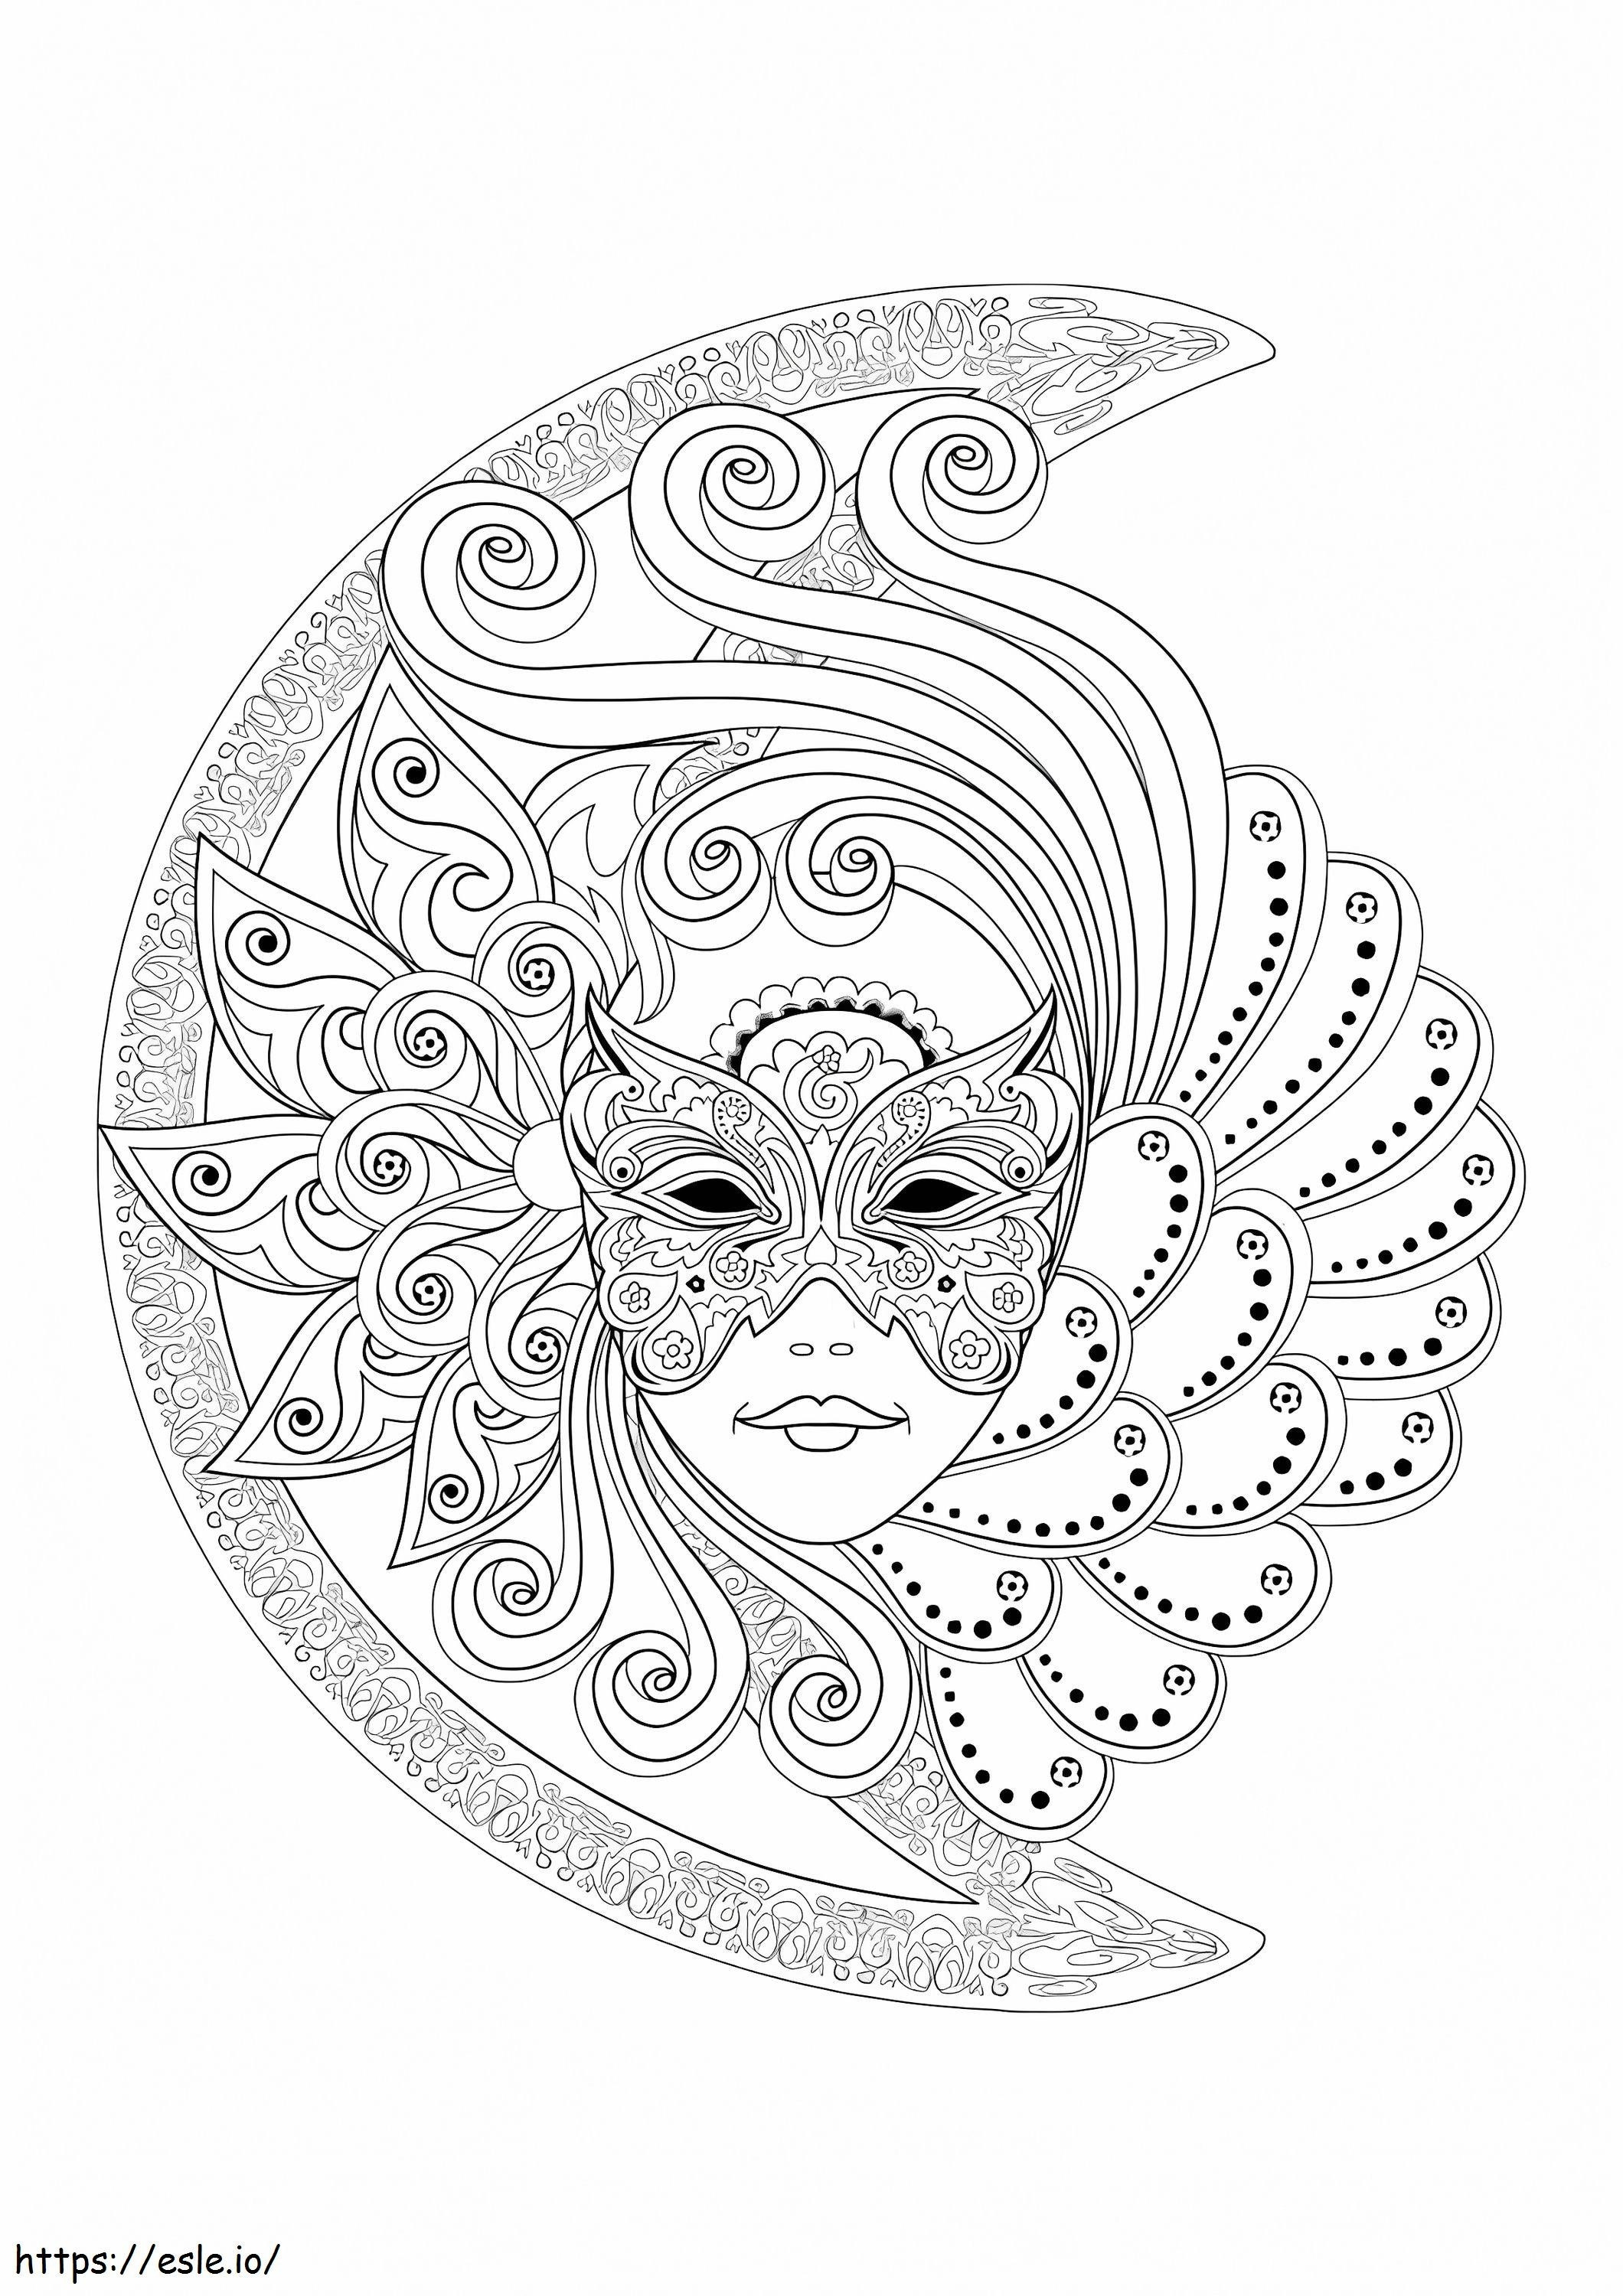 Het Gezicht Van De Vrouw Met Een Carnaval-masker kleurplaat kleurplaat